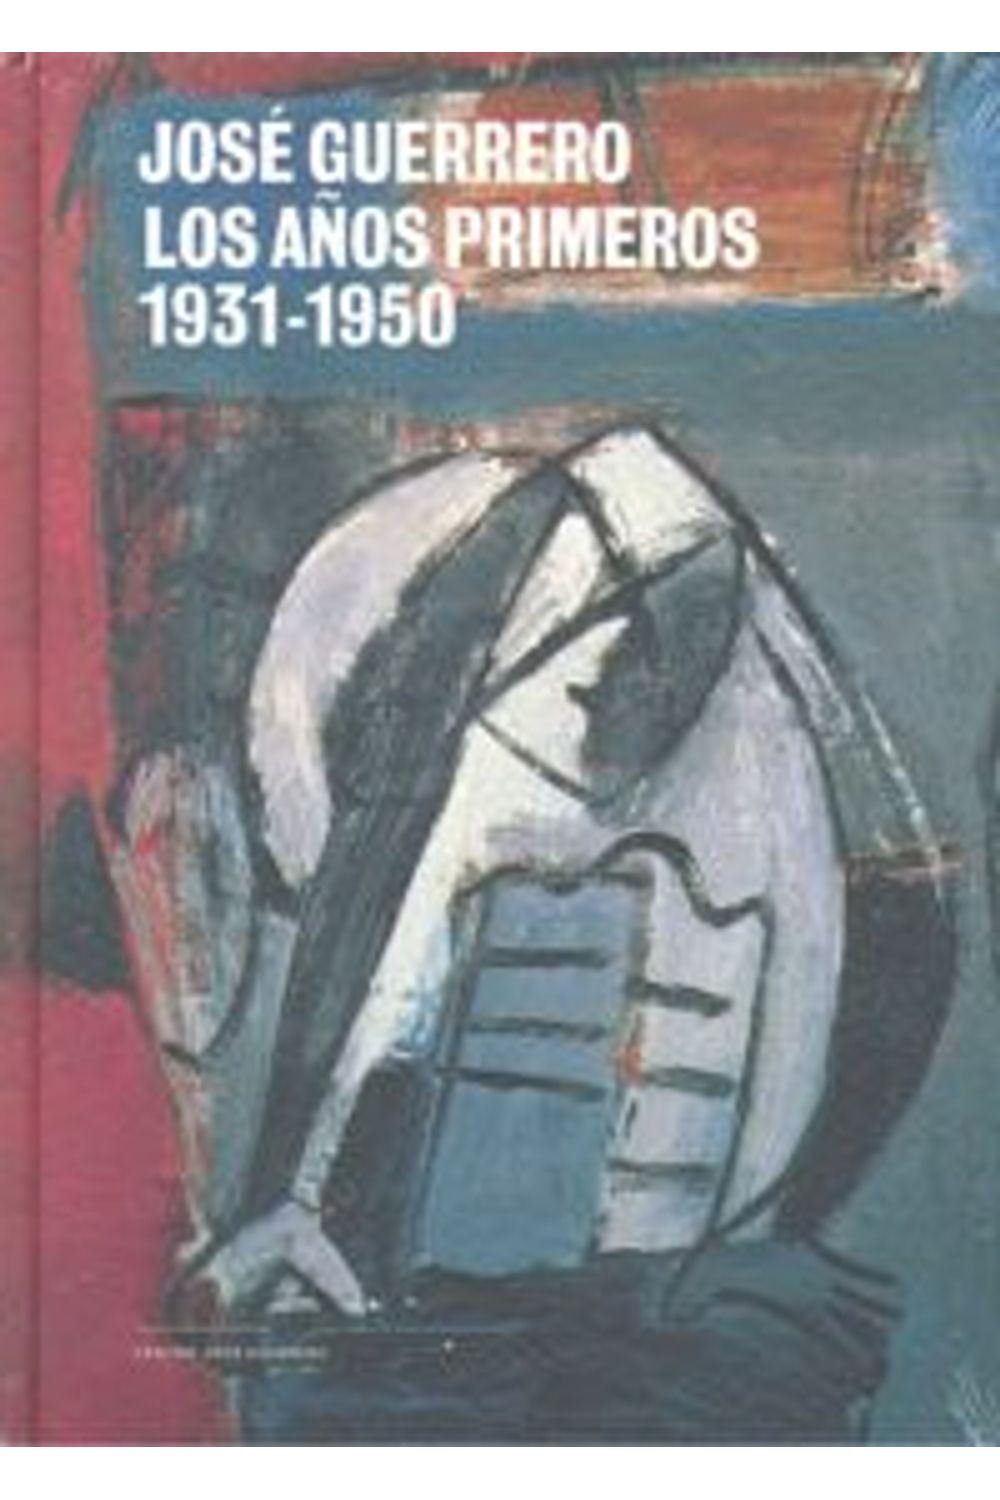 Jose Guerrero Los Años Primeros 1931-1950